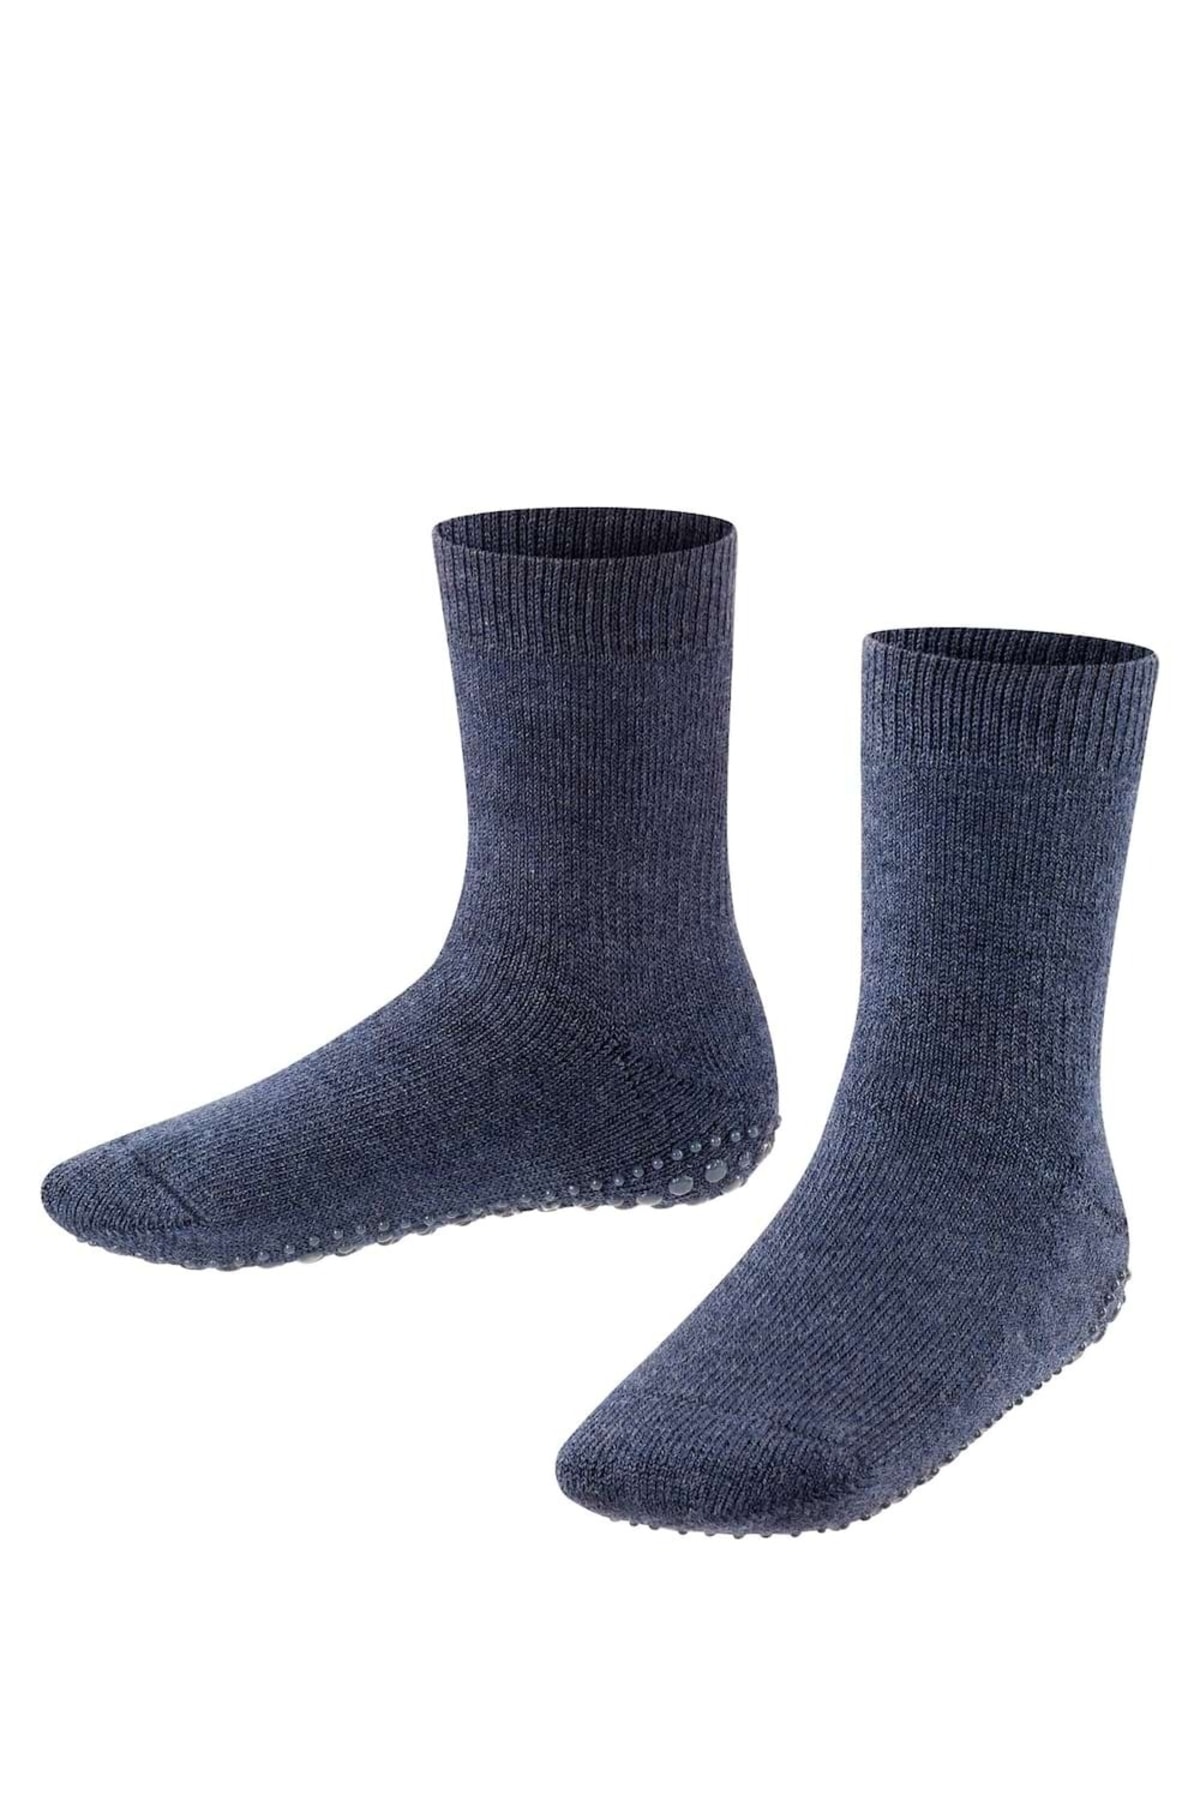 FALKE Socken Dunkelblau Casual - 31-34 Hersteller: Falke Bestellnummer: